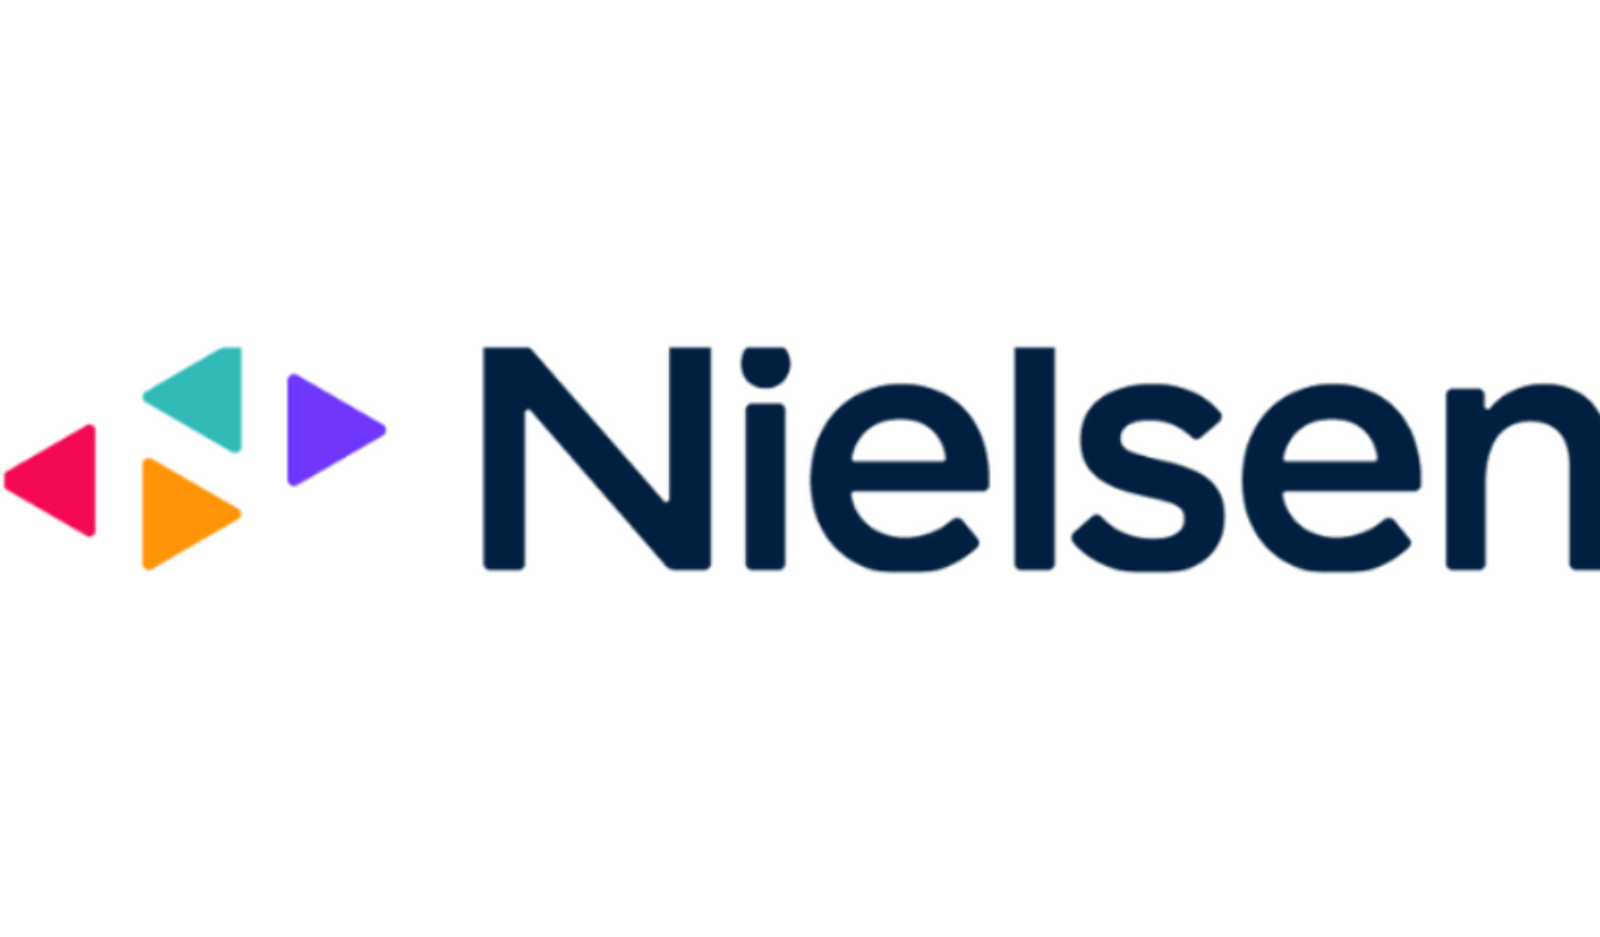 尼尔森在印度推出尼尔森数字广告评级识别系统